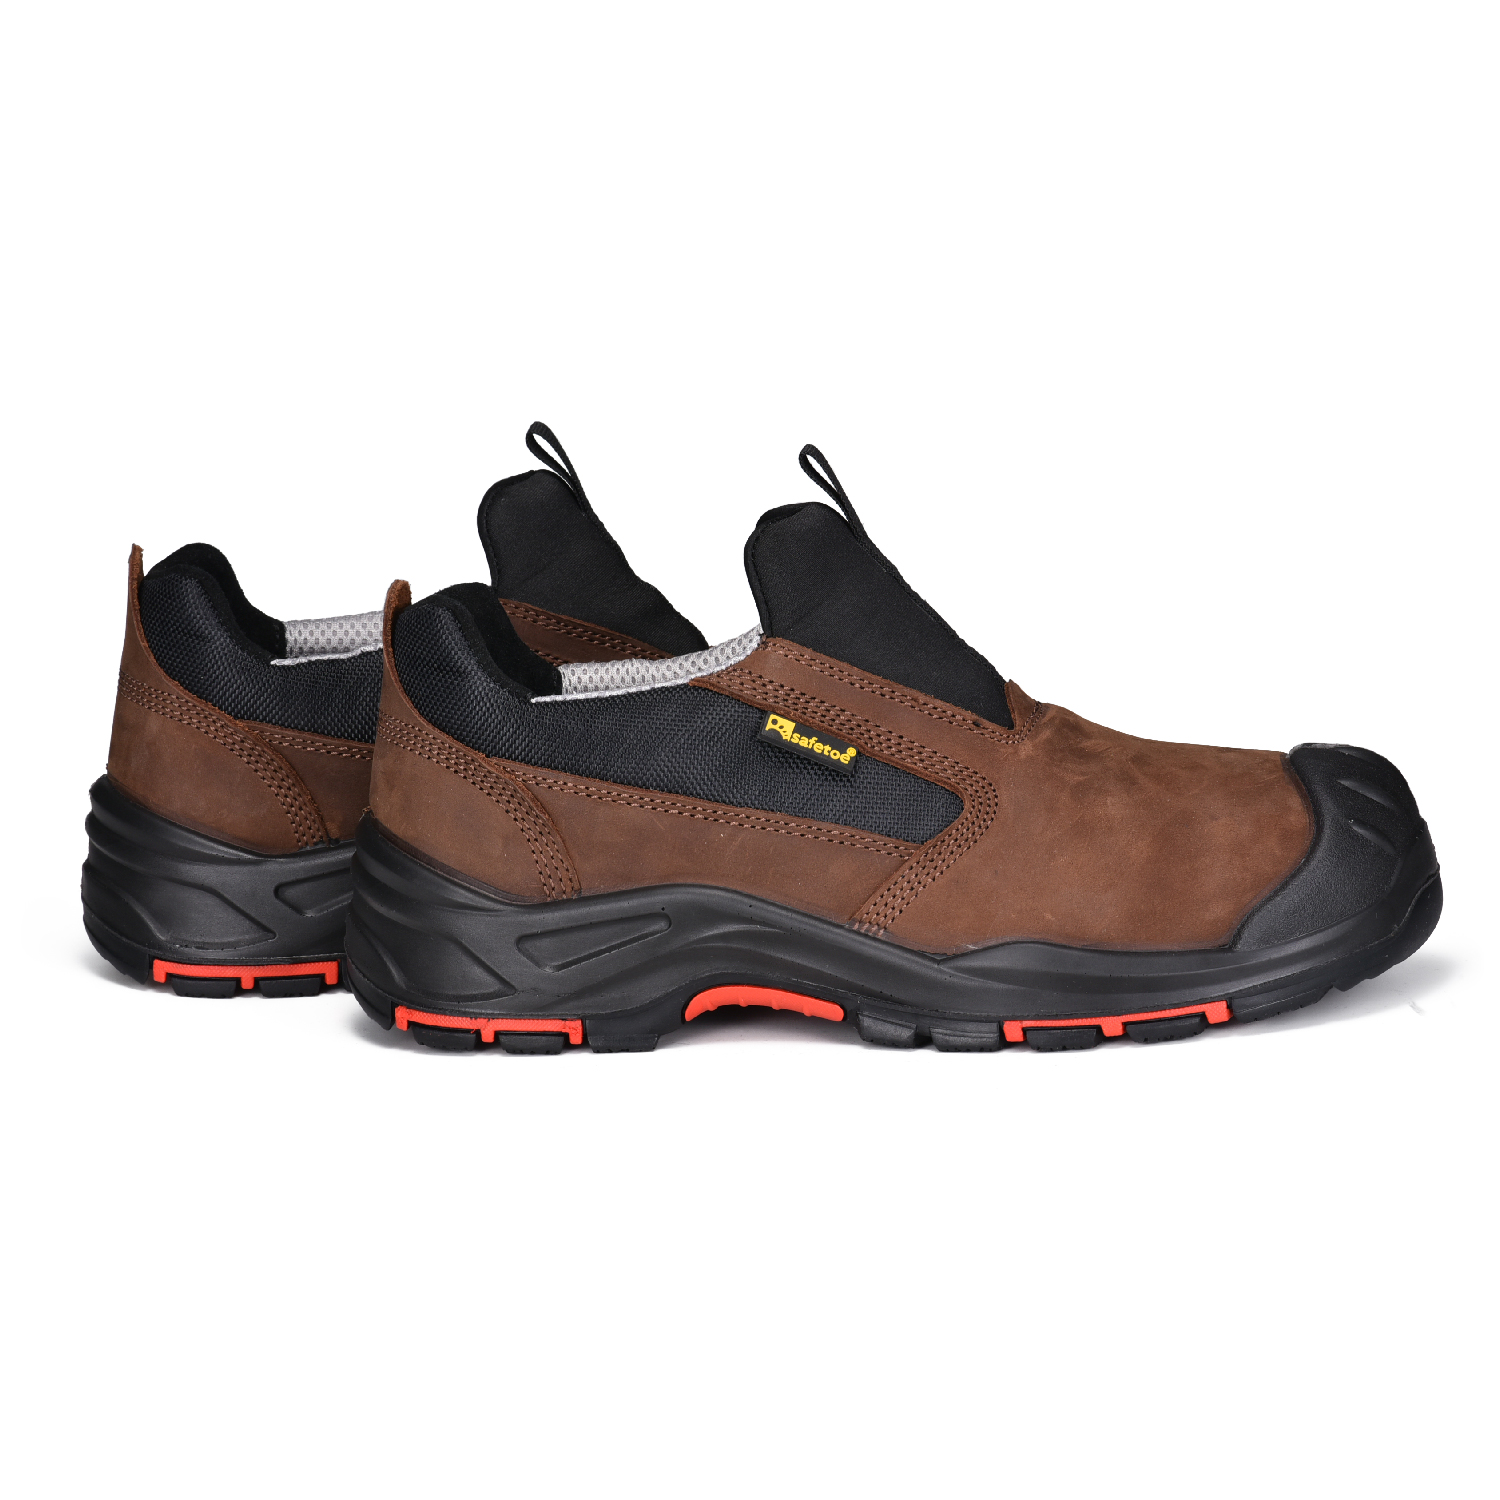 Zapatos de trabajo de seguridad superiores sin metal, resistentes al aceite y antideslizantes L-7525